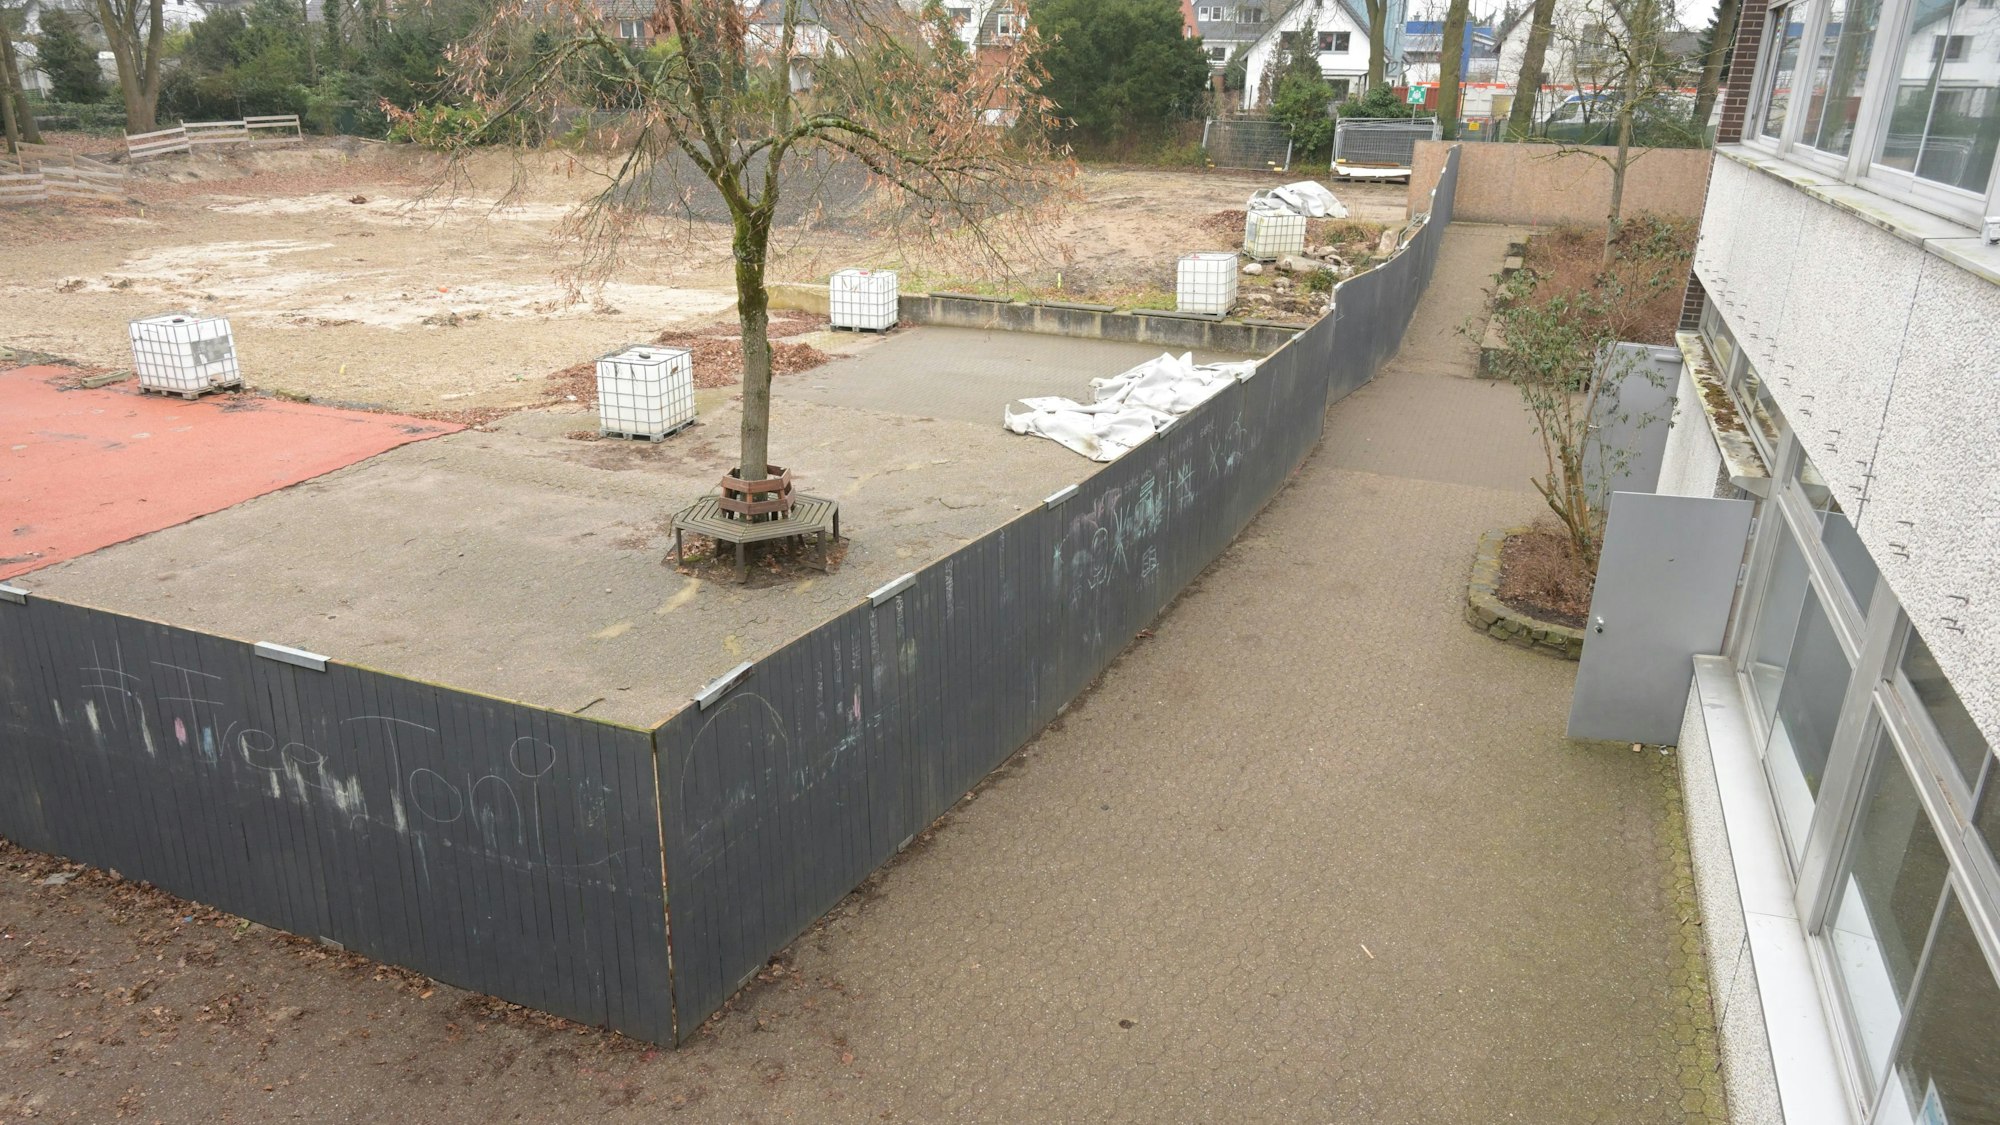 Links im Bild sieht man den schwarzen Bretterzaun, daneben liegt der schmale Schulhof-Gang, der an das Schulgebäude grenzt.